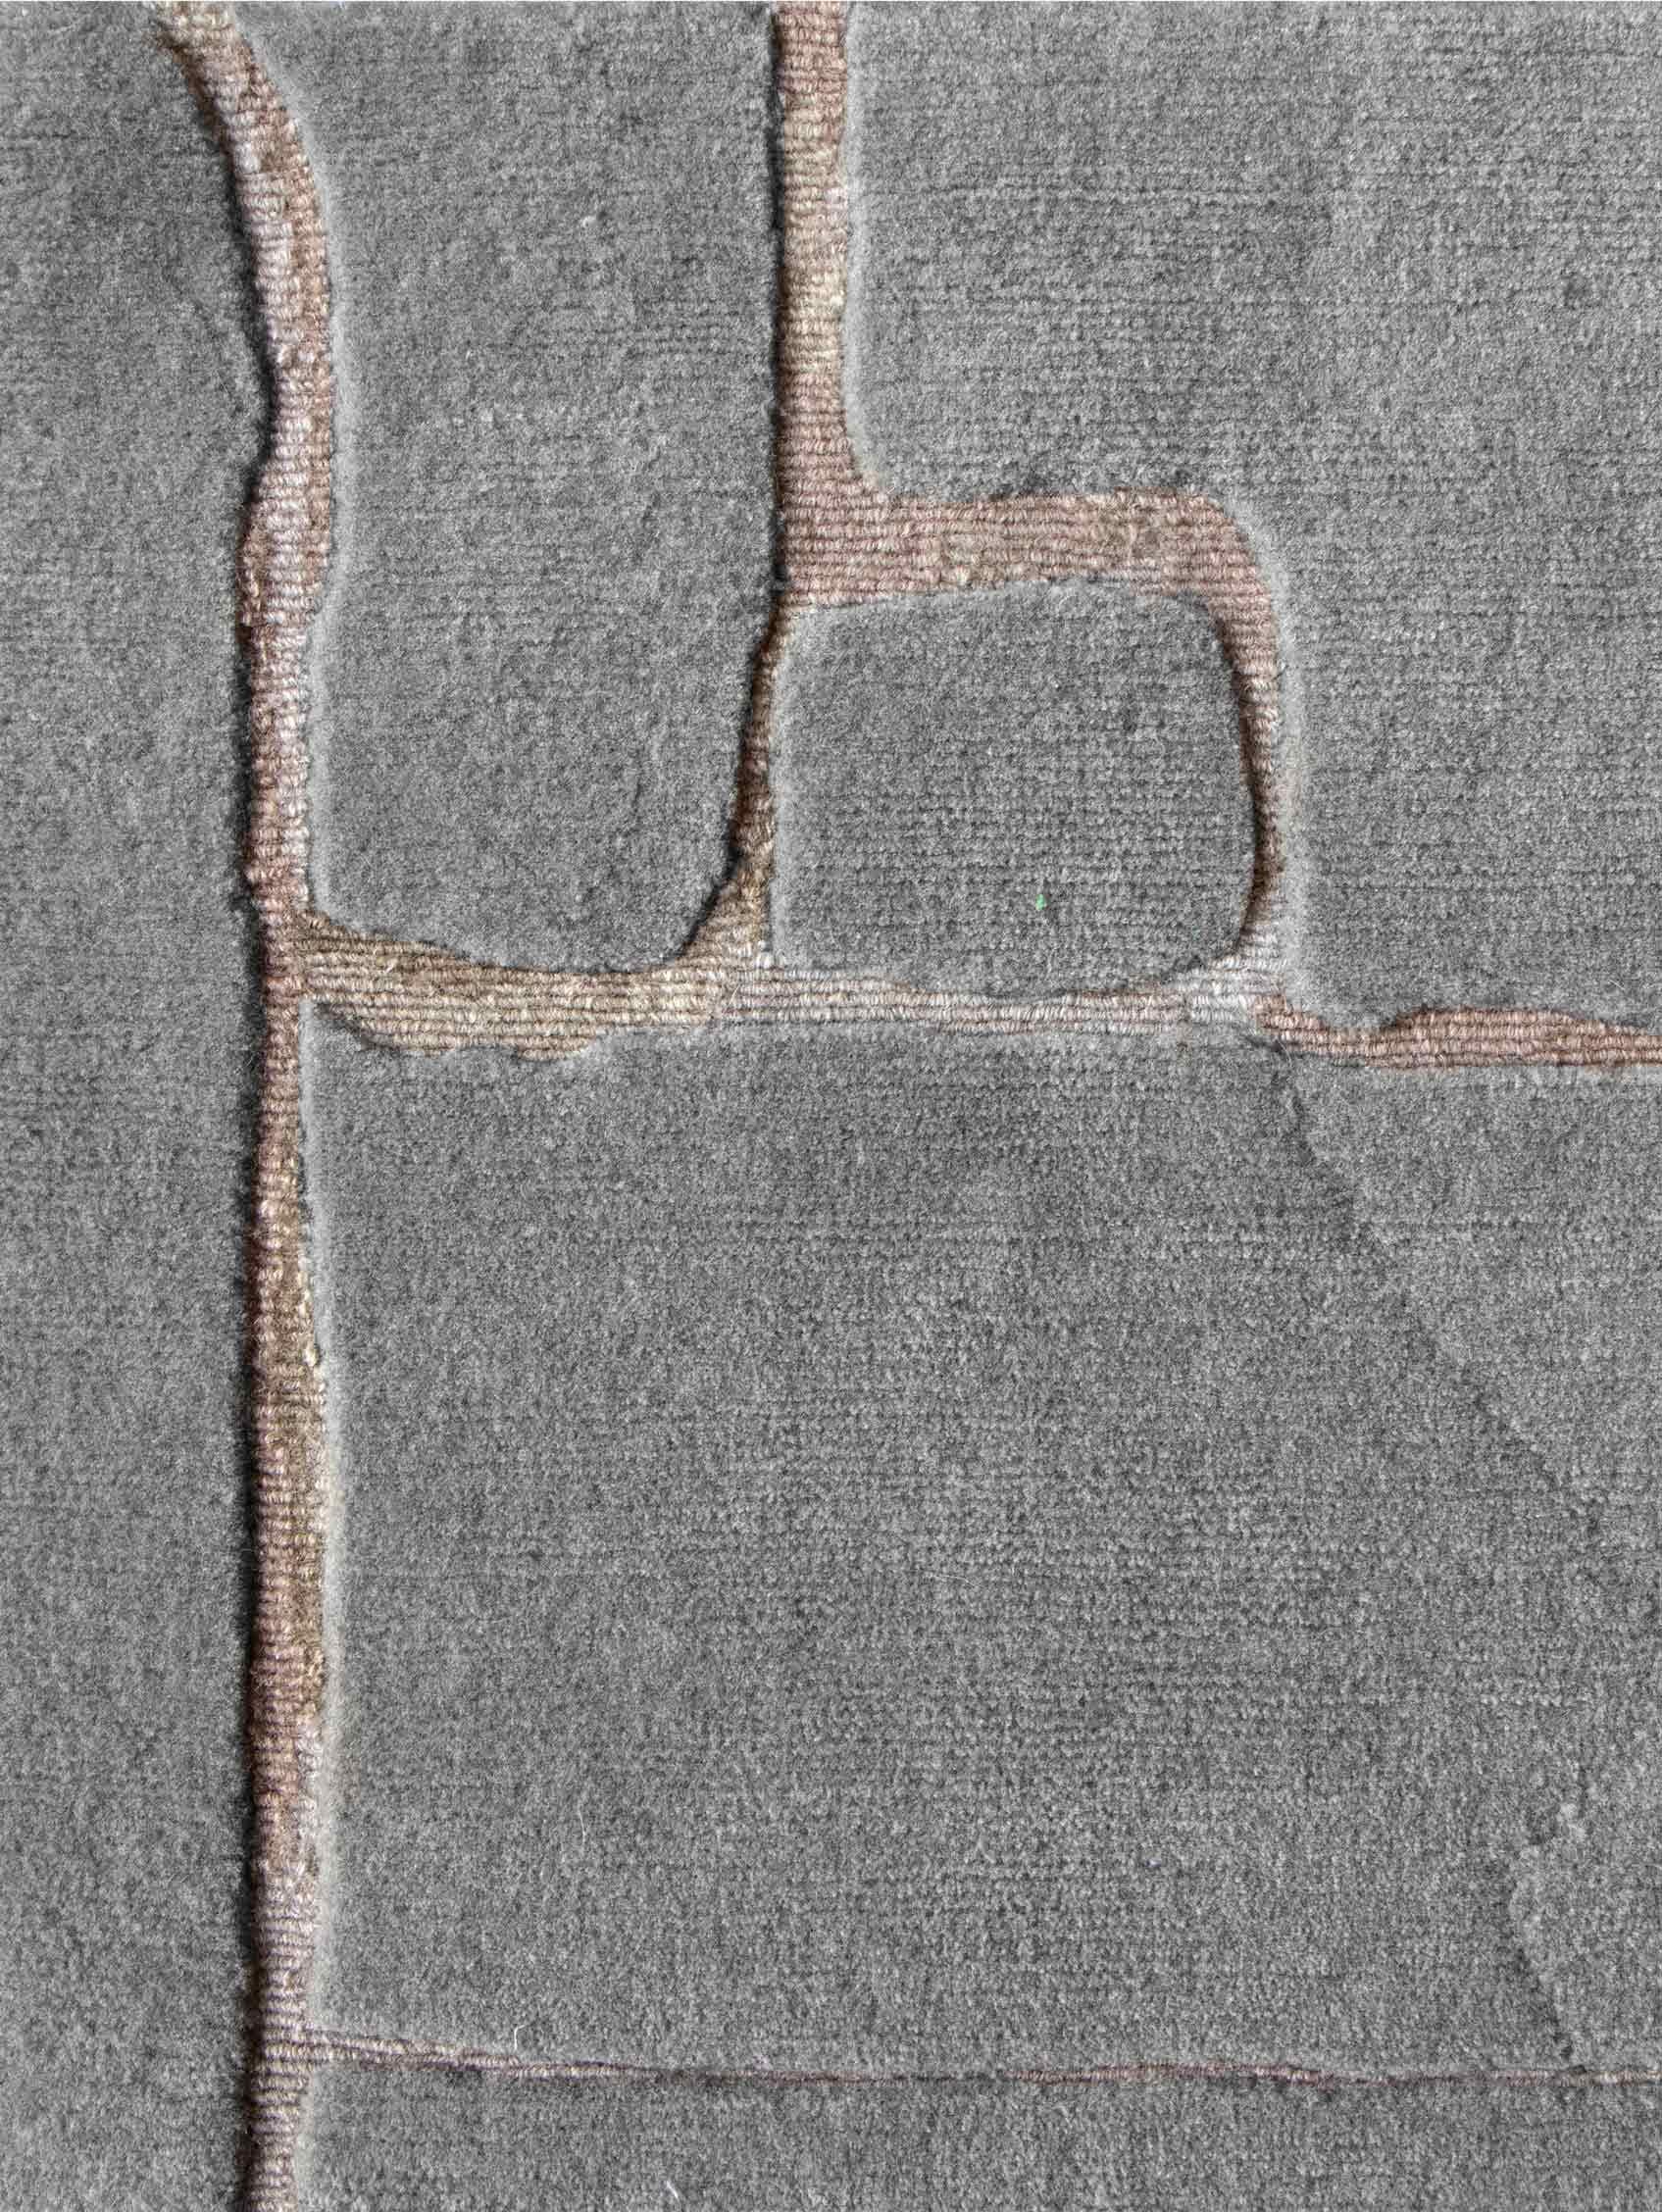 Muster des Teppichs: Portico - Graustufen
MATERIAL: Neuseeländische Wolle
Qualität: Tibetisches Kreuzgeflecht 
Größe: 8' x 10'
Hergestellt in Nepal
Entworfen von Eskayel.